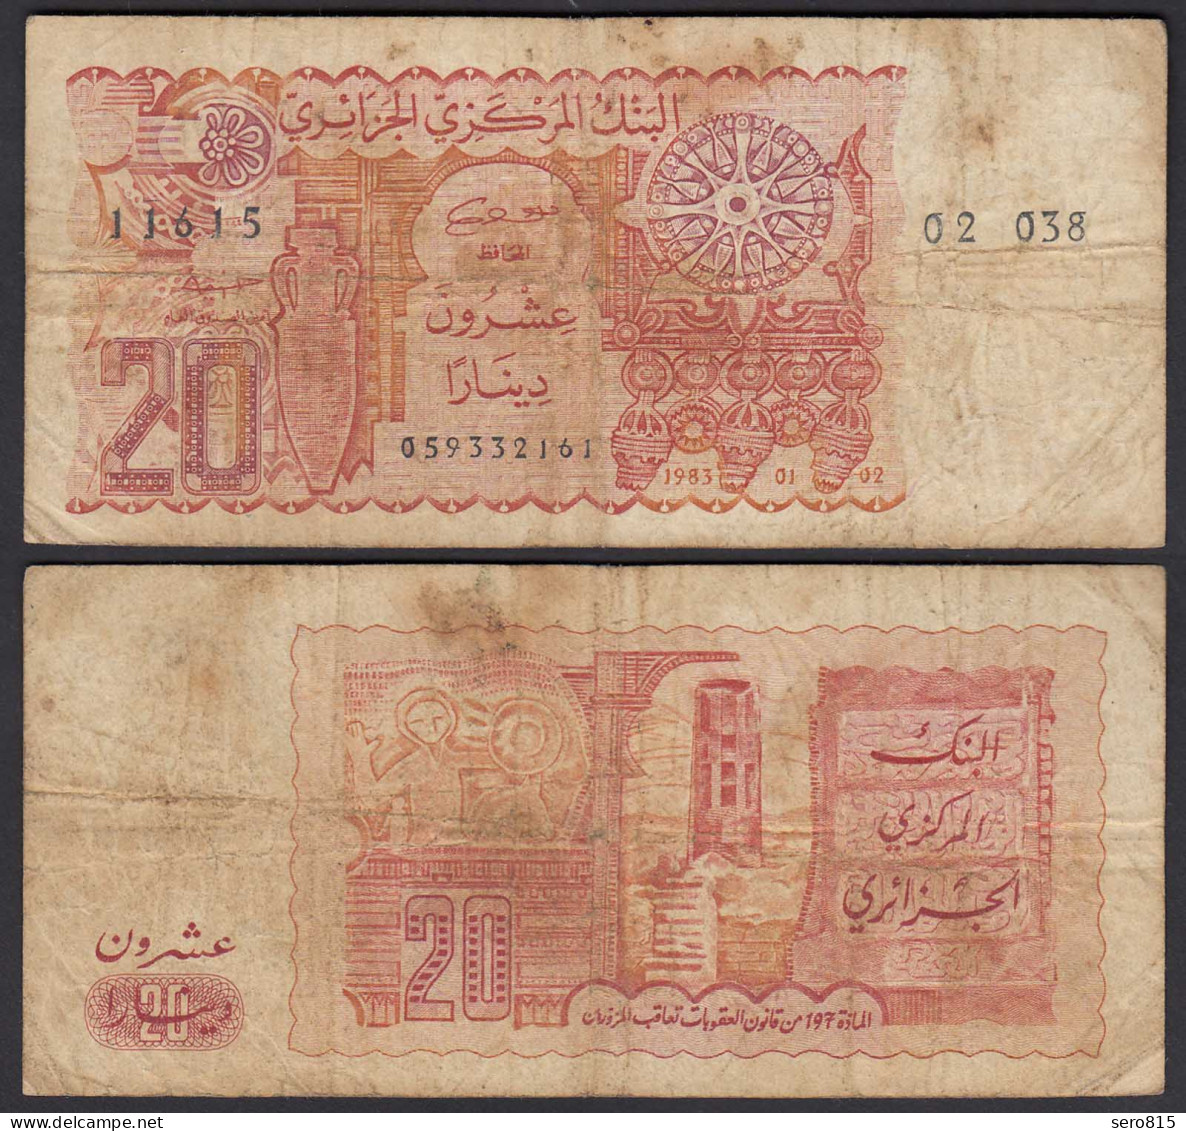 ALGERIEN - ALGERIA 20 Dinars Banknote 1983 Pick 133a VG (5)   (25215 - Autres - Afrique